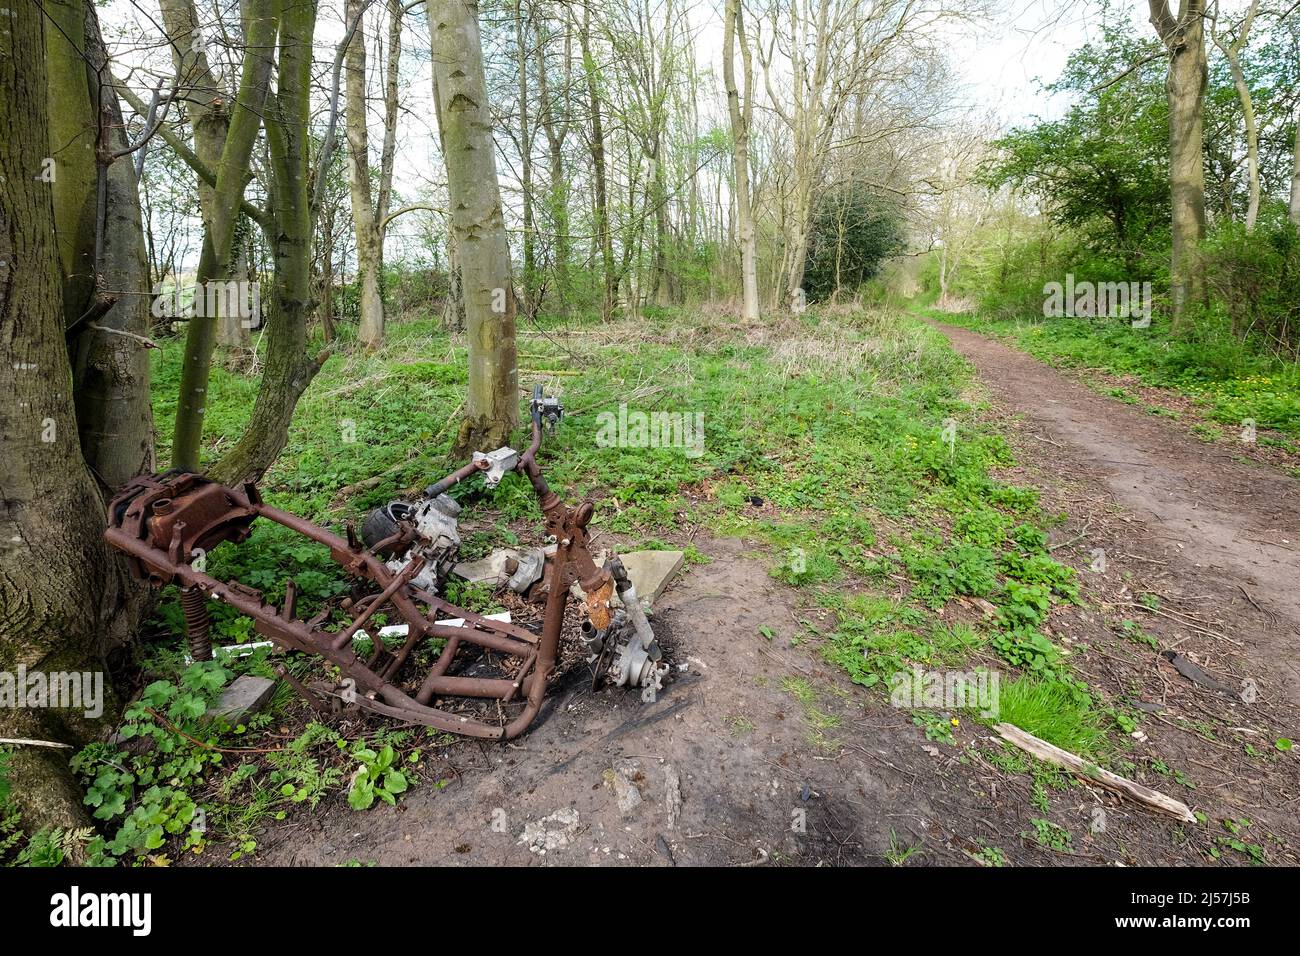 motocicletta bruciata scaricata nel bosco Foto Stock